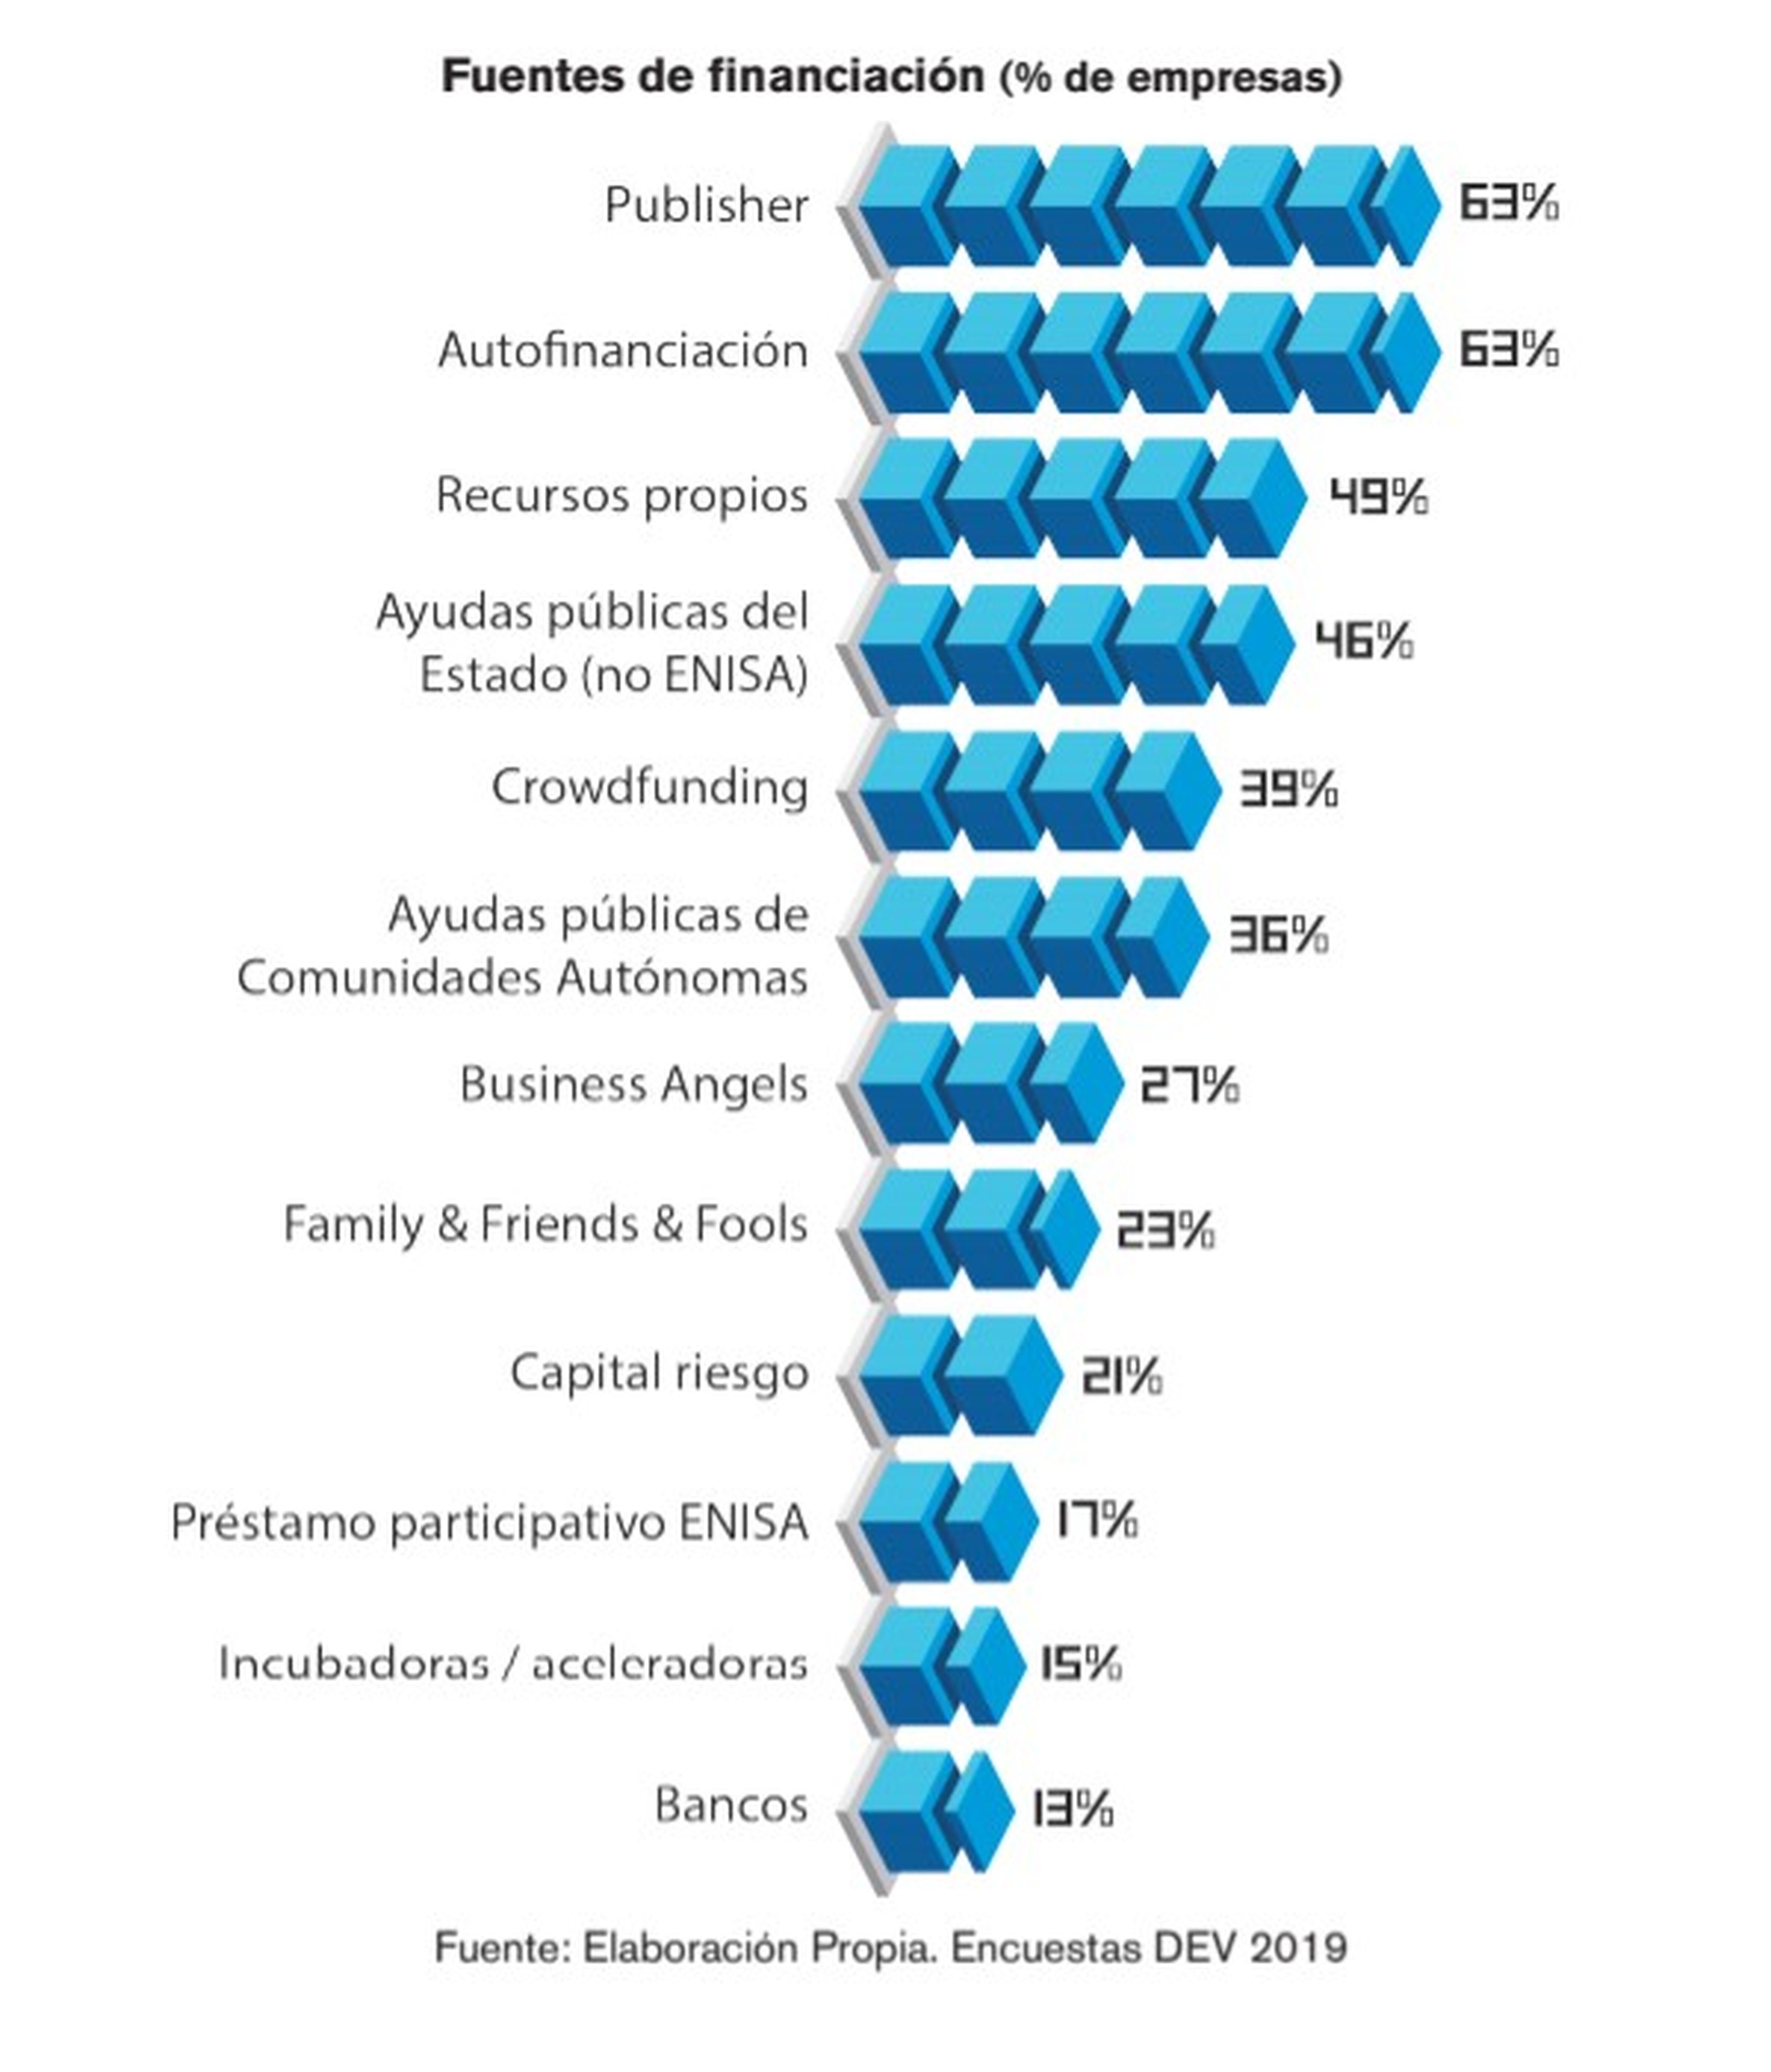 En cuanto a la financiación de los proyectos, el índice más alto se lo llevan los publisher y la autofinanciación